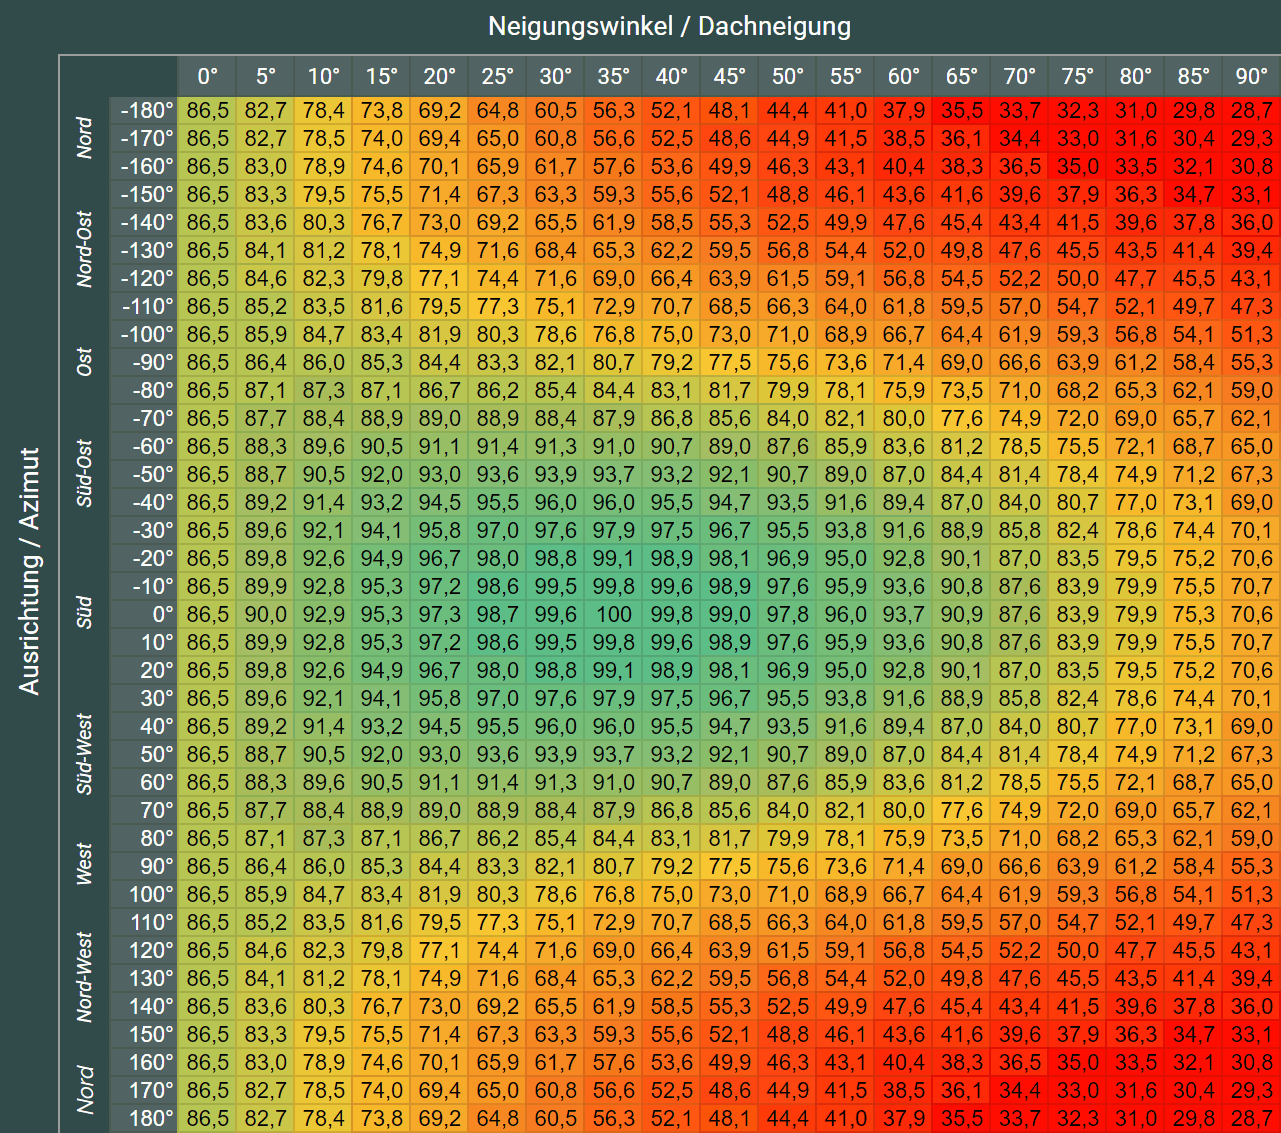 Photovoltaik Neigungswinkel Tabelle für Süddeutschland